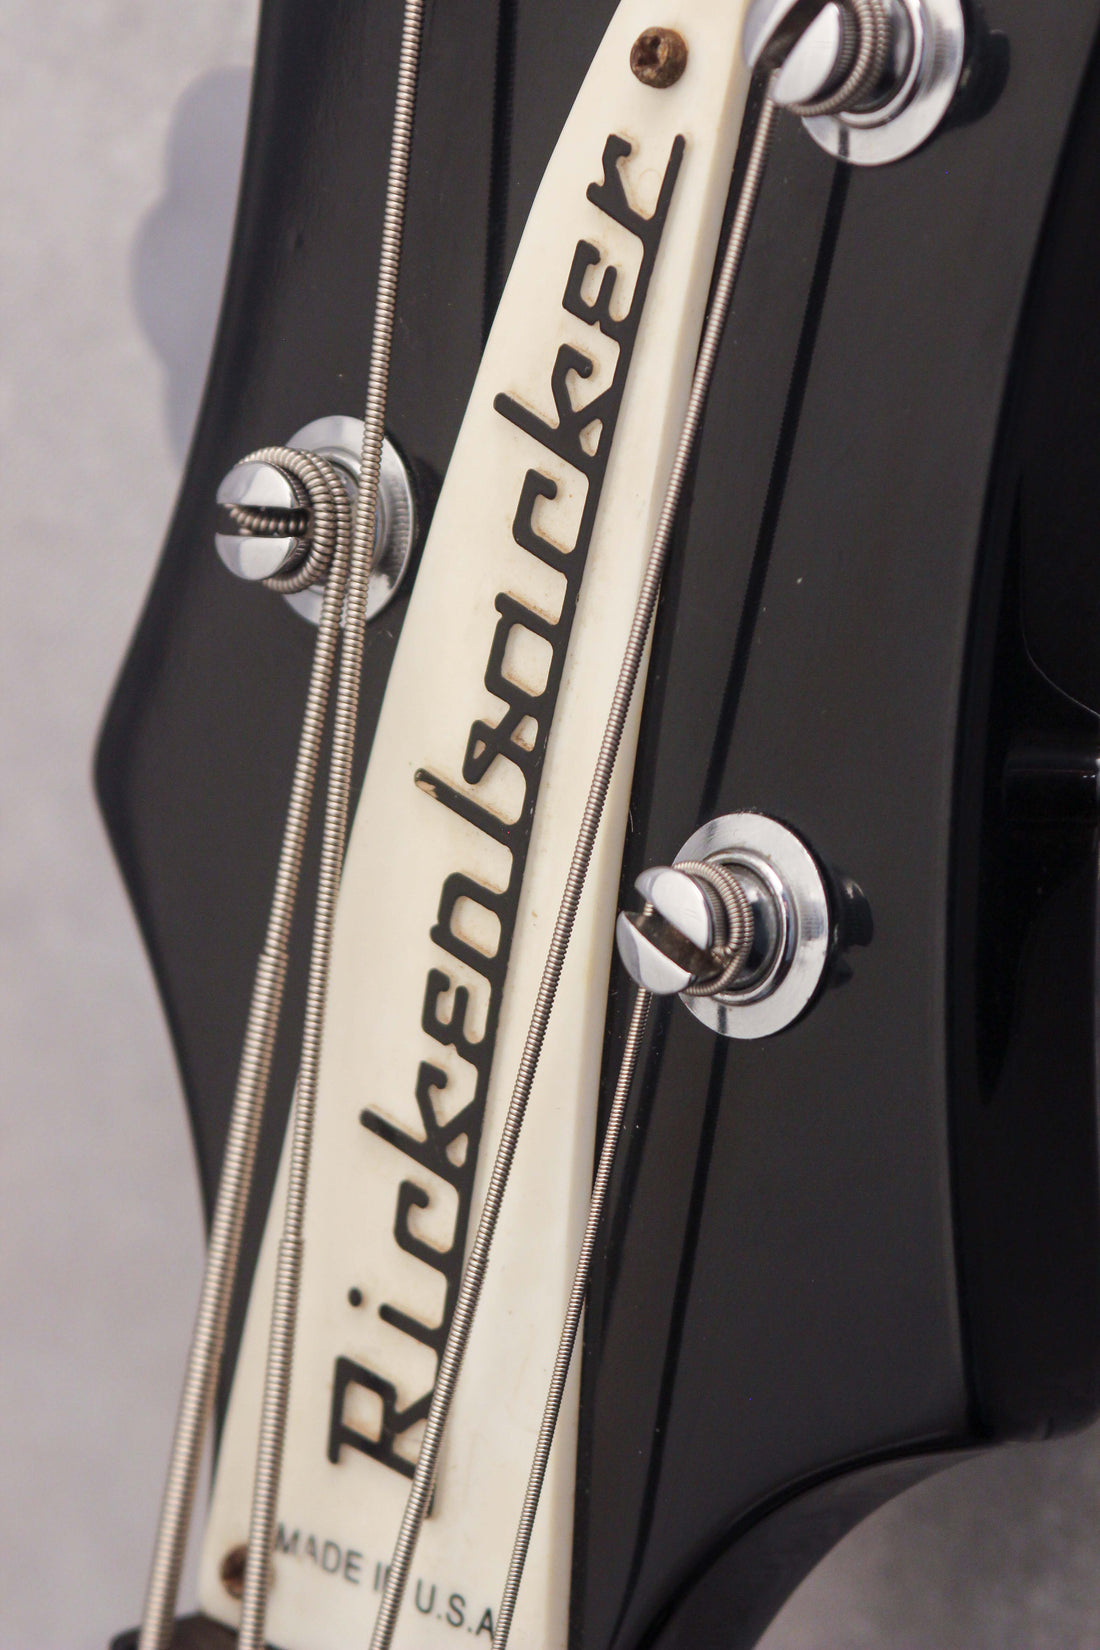 Rickenbacker 4003 Bass Jetglo 1998